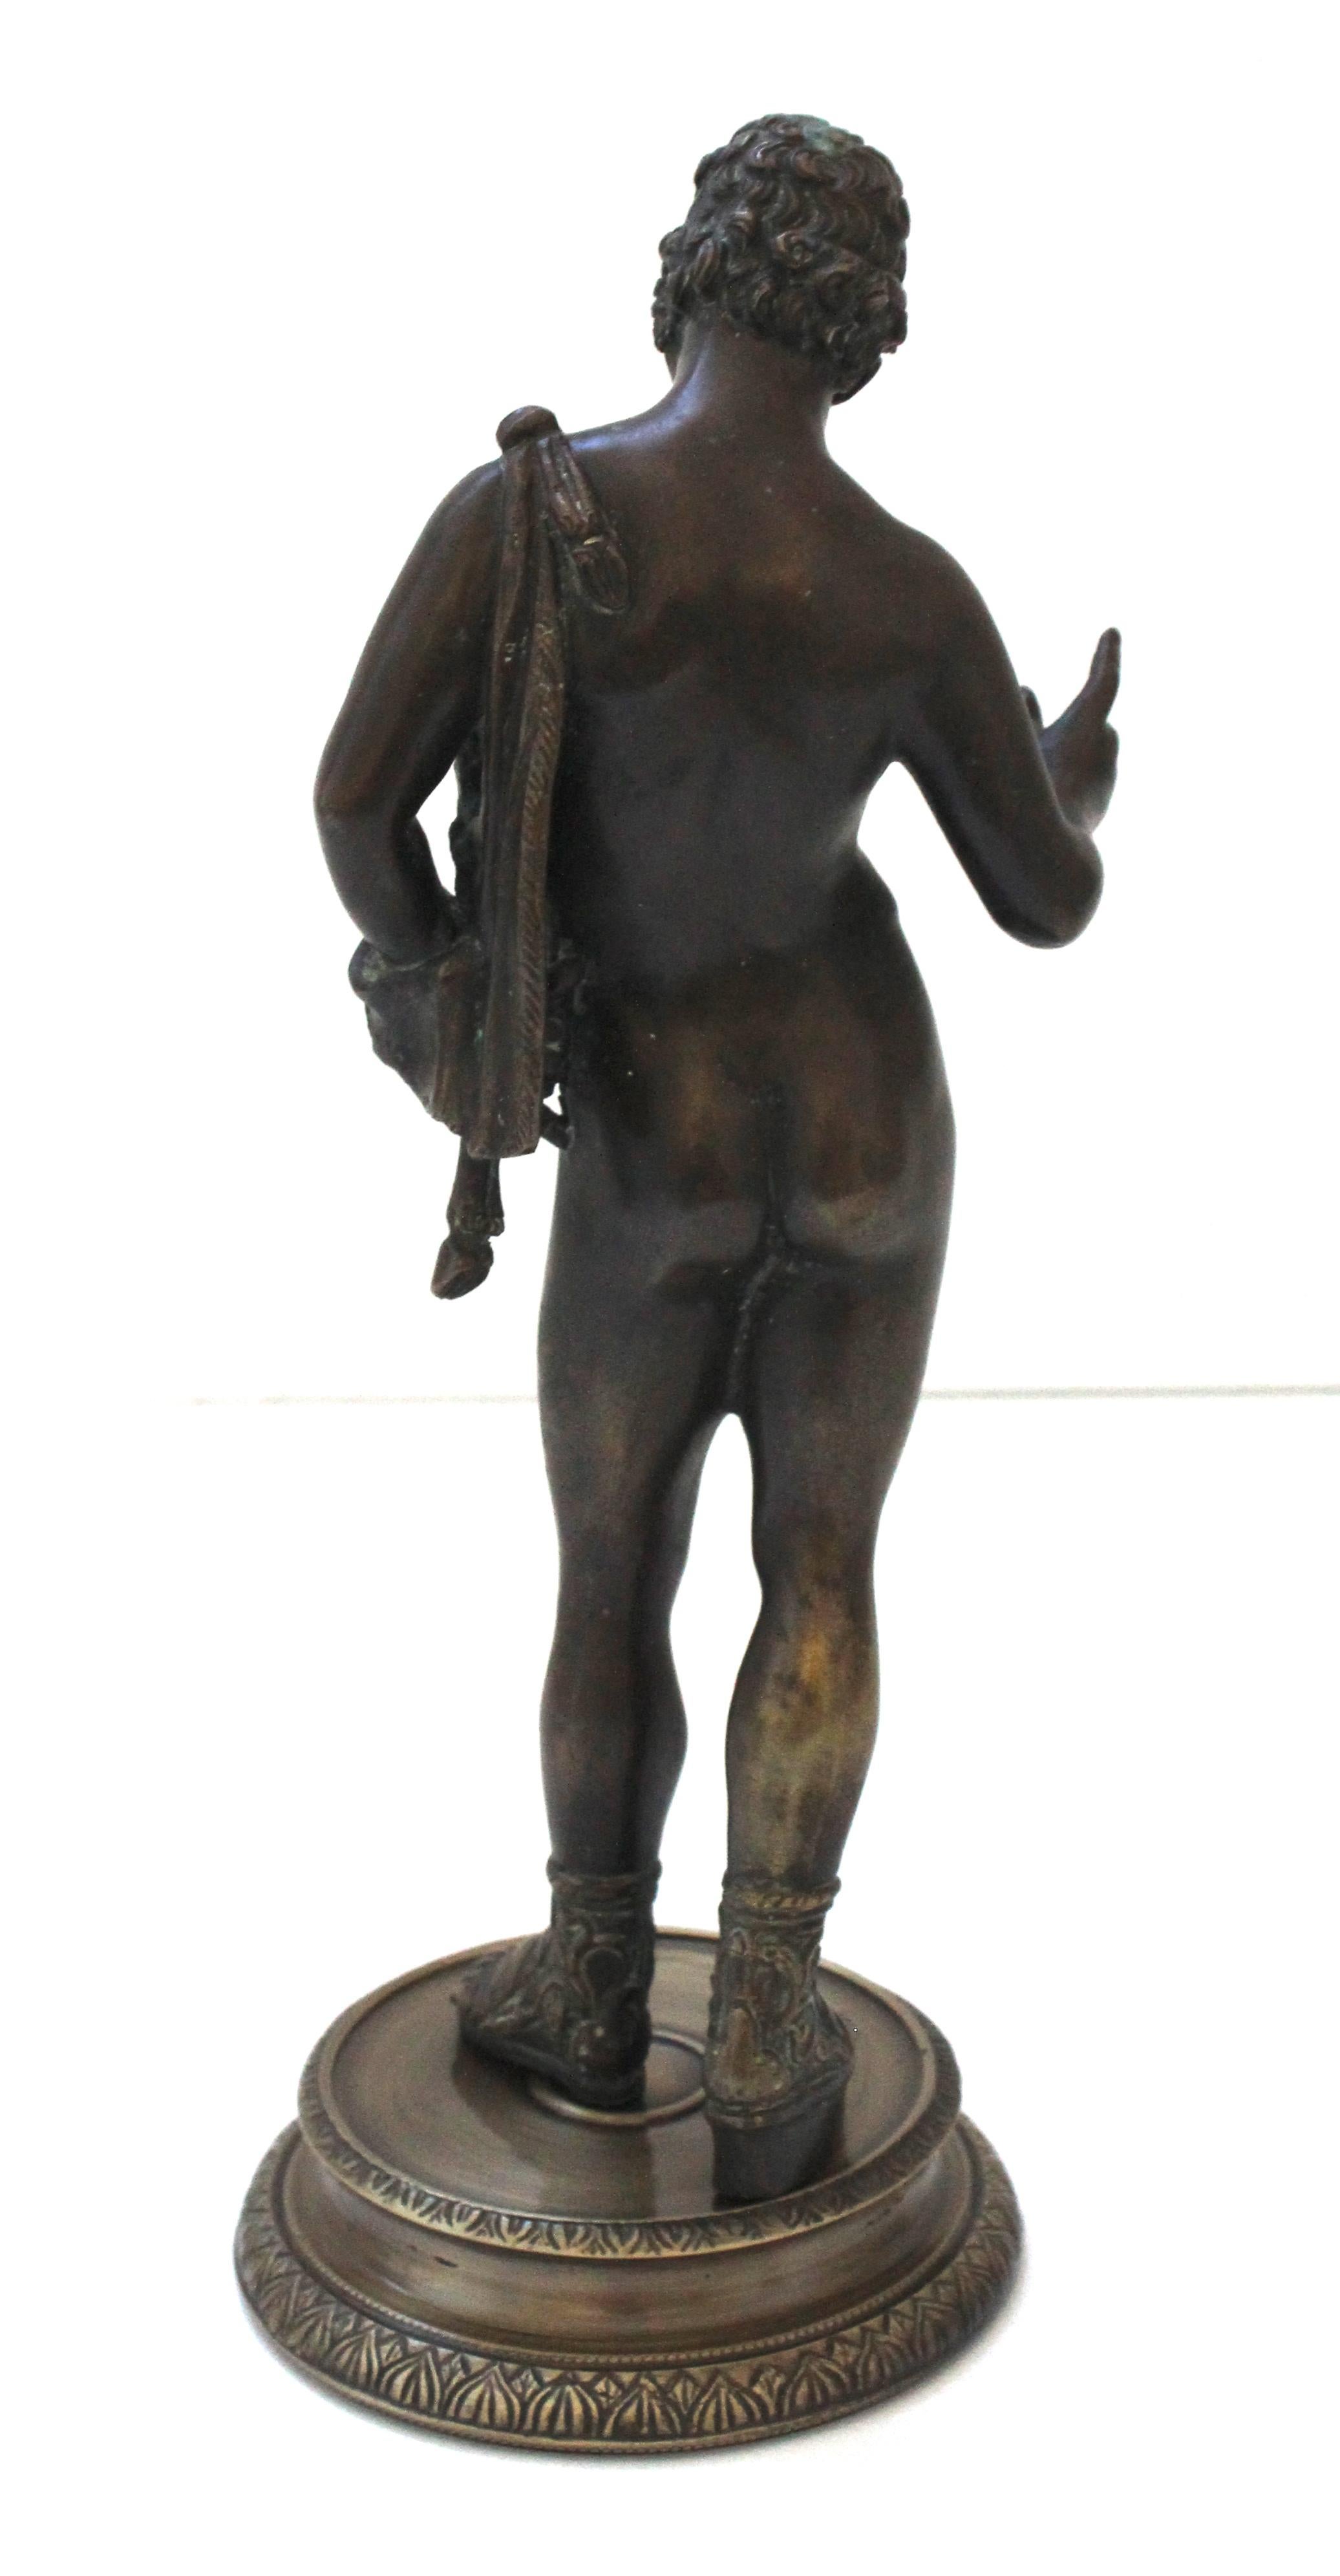 Grand Tour Bronze Sculpture of Narcissus